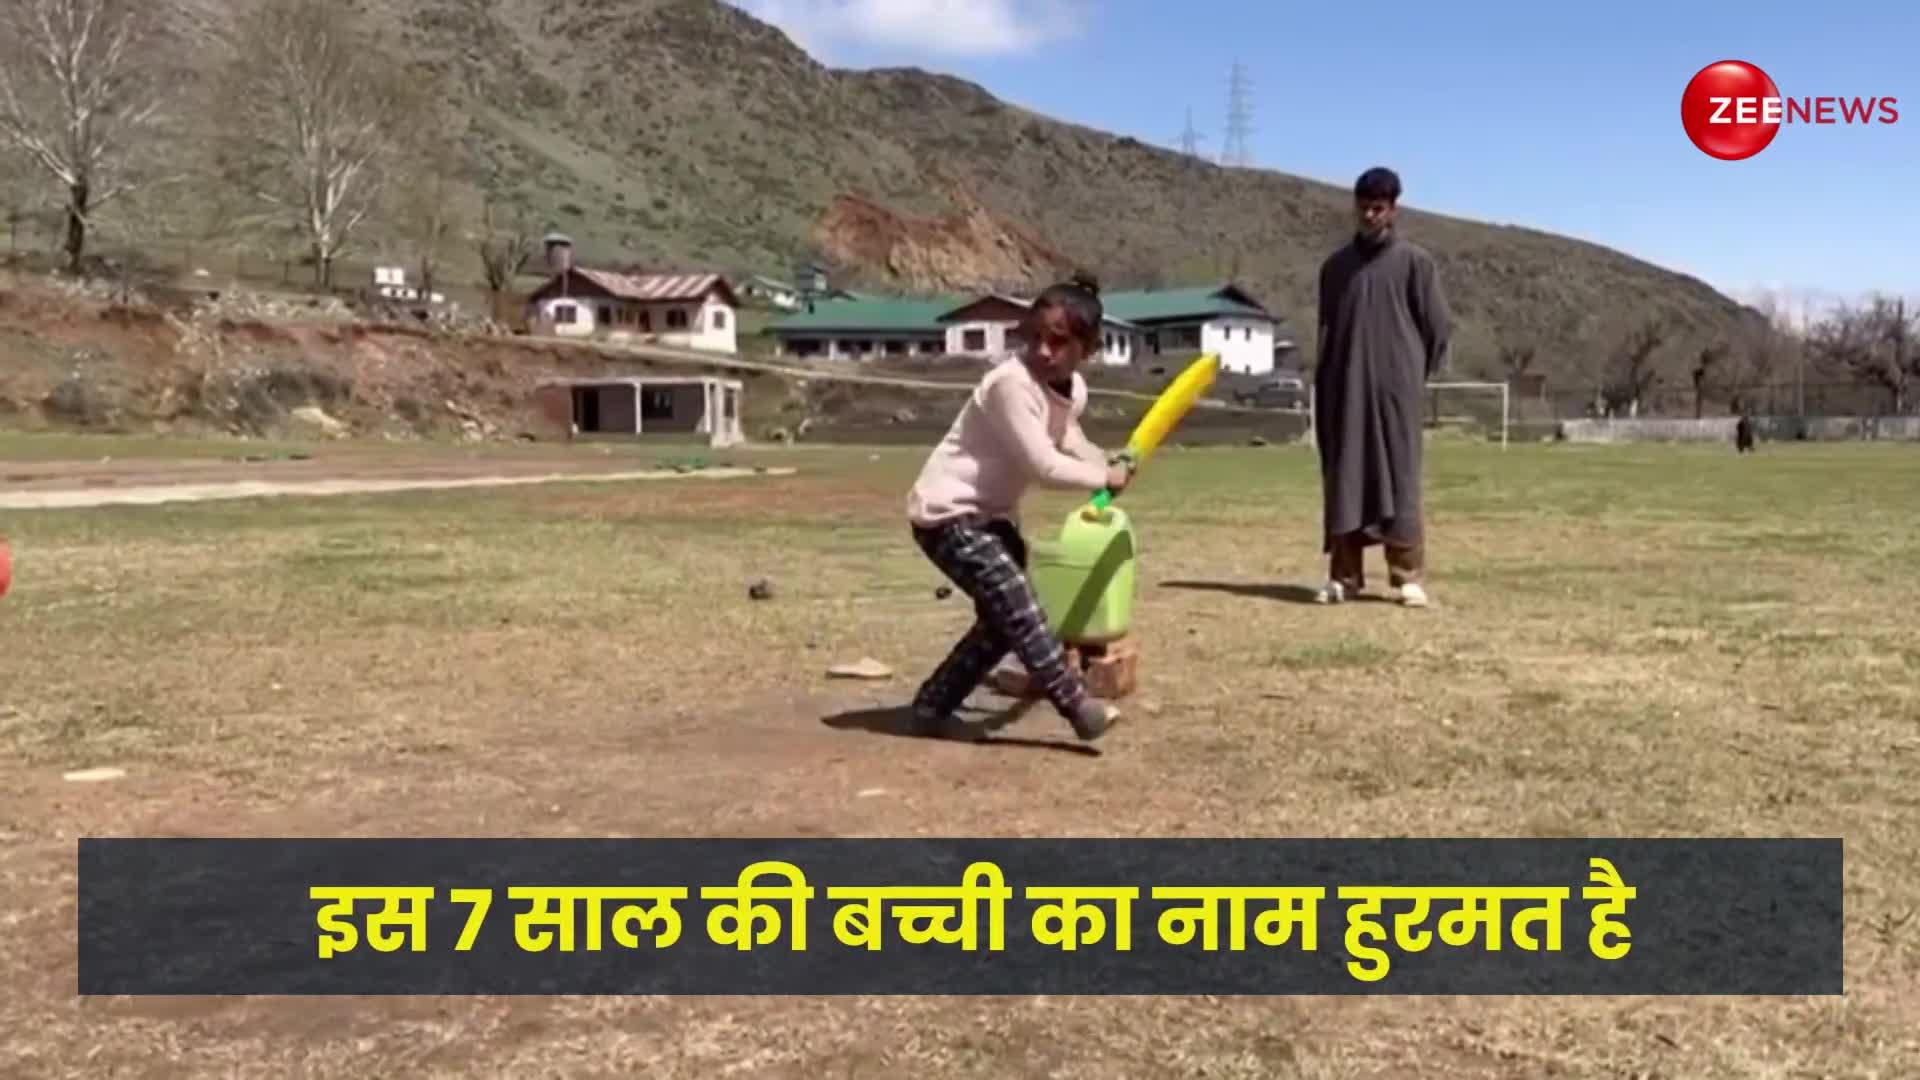 कश्मीरी बच्ची के चौके-छक्कों ने जीता लोगों का दिल, मास्टर-ब्लास्टर ने शेयर किया वीडियो